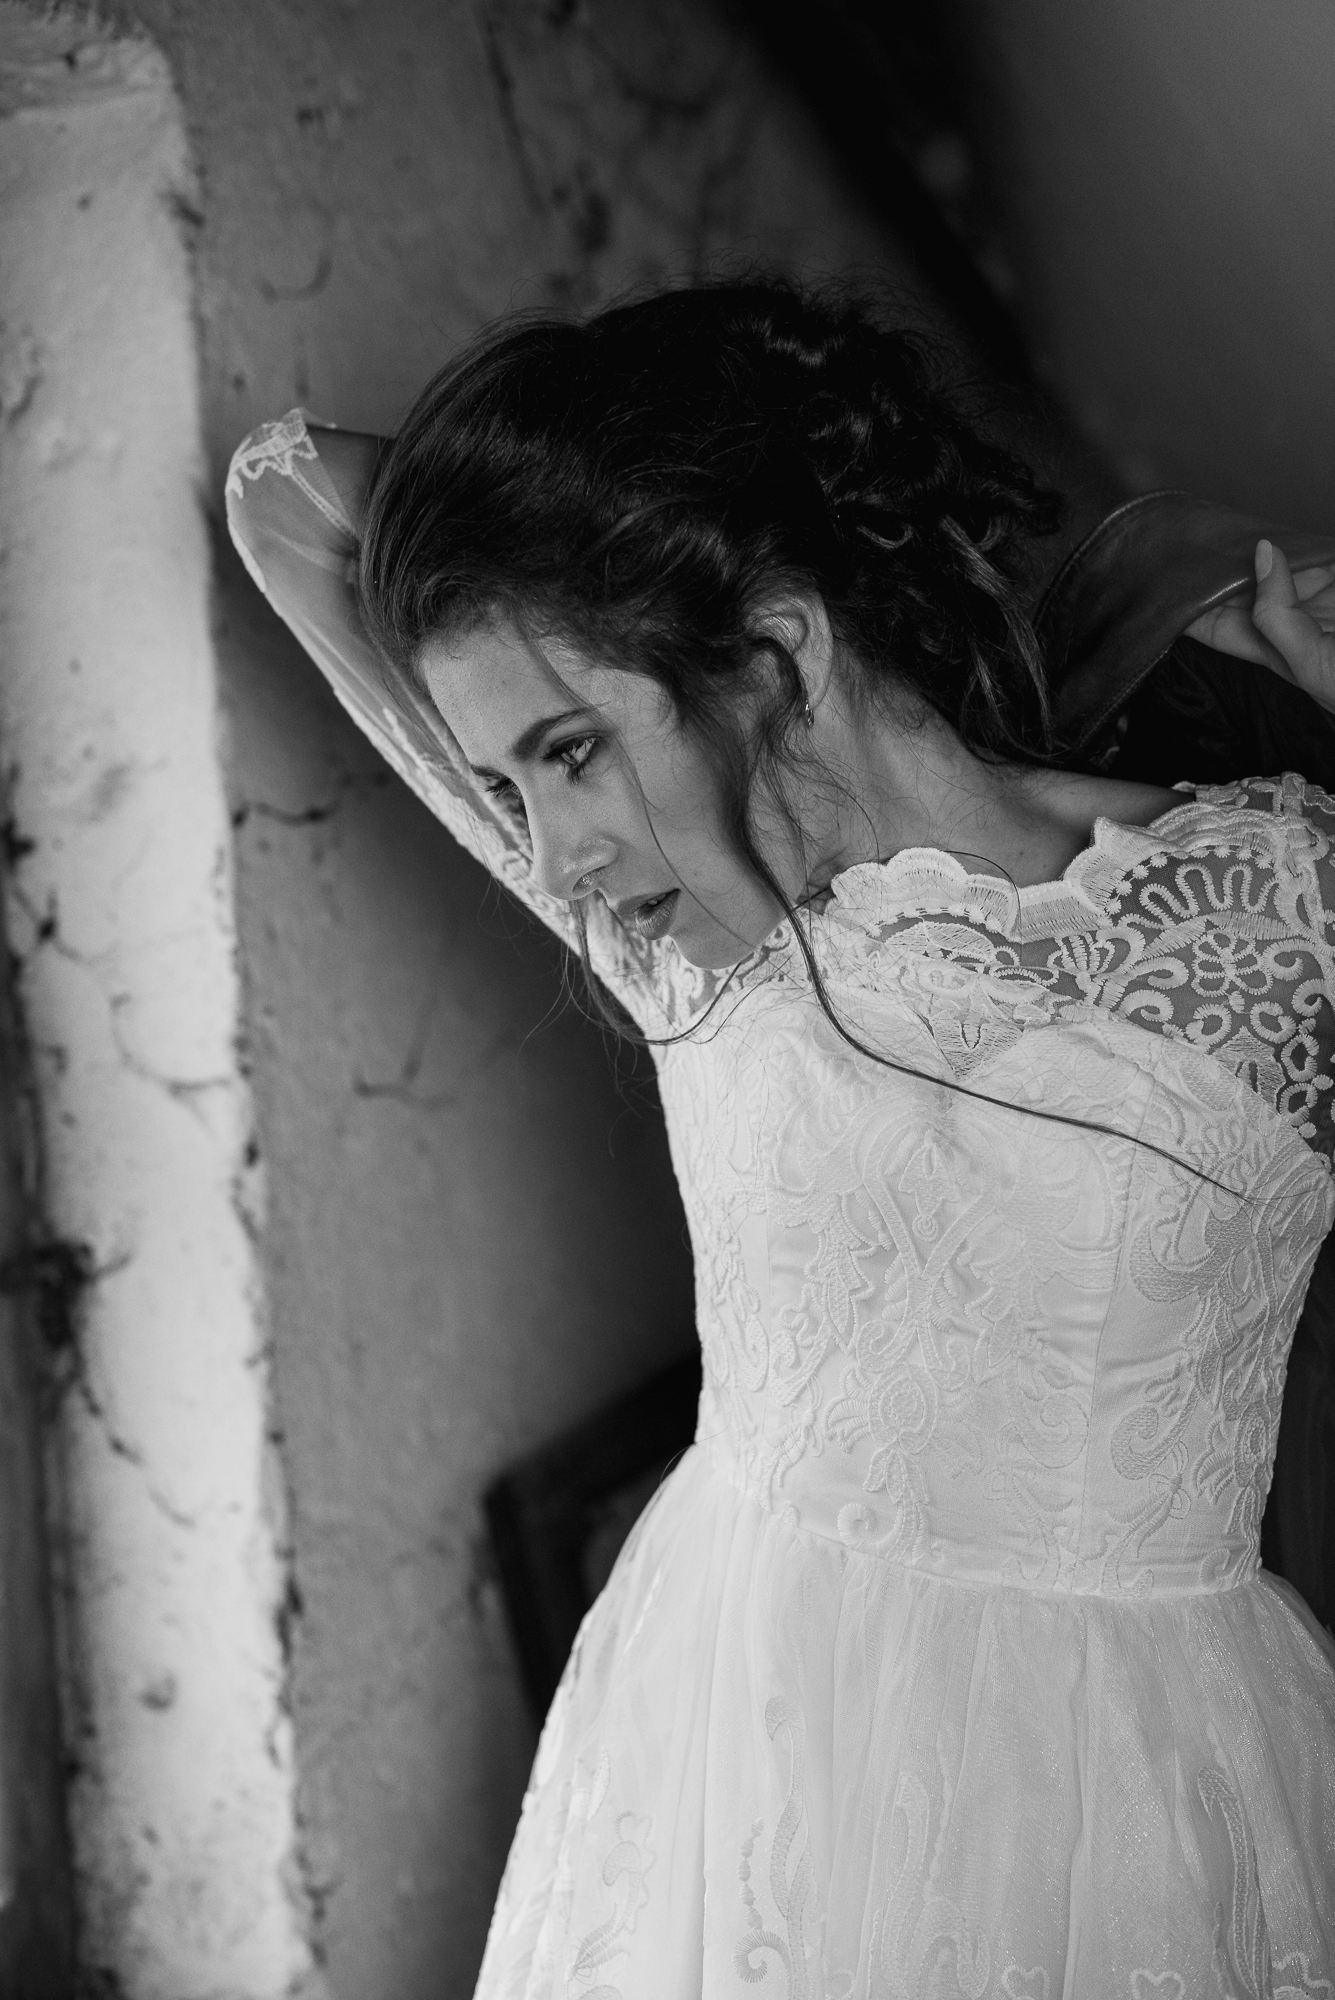 junge Frau Dachboden Hochzeitskleid Schwarzweissfoto steht am Fenster ist verzweifelt. Editorial Portrait Fotografie Thomas Gauck